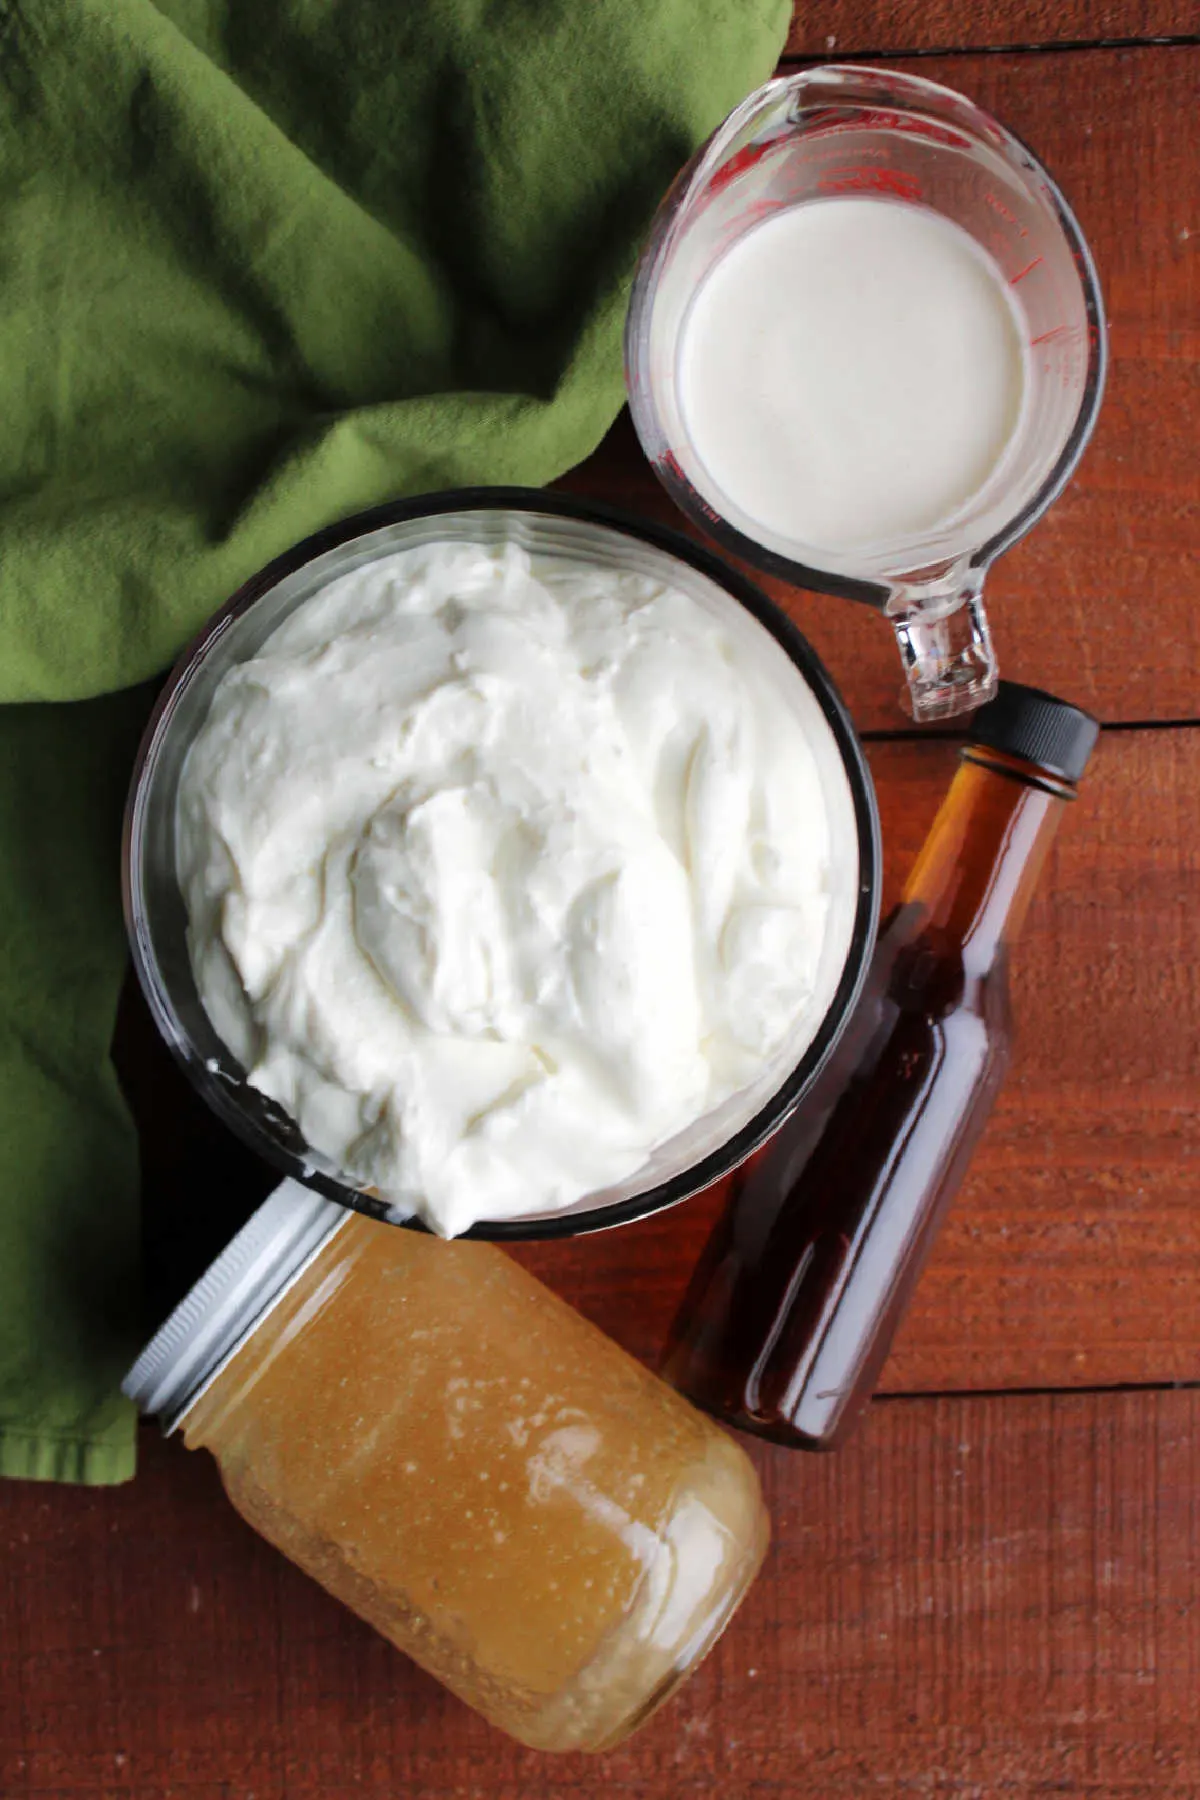 Ingredients: yogurt, cream, yogurt and vanilla ready to be made into frozen yogurt.